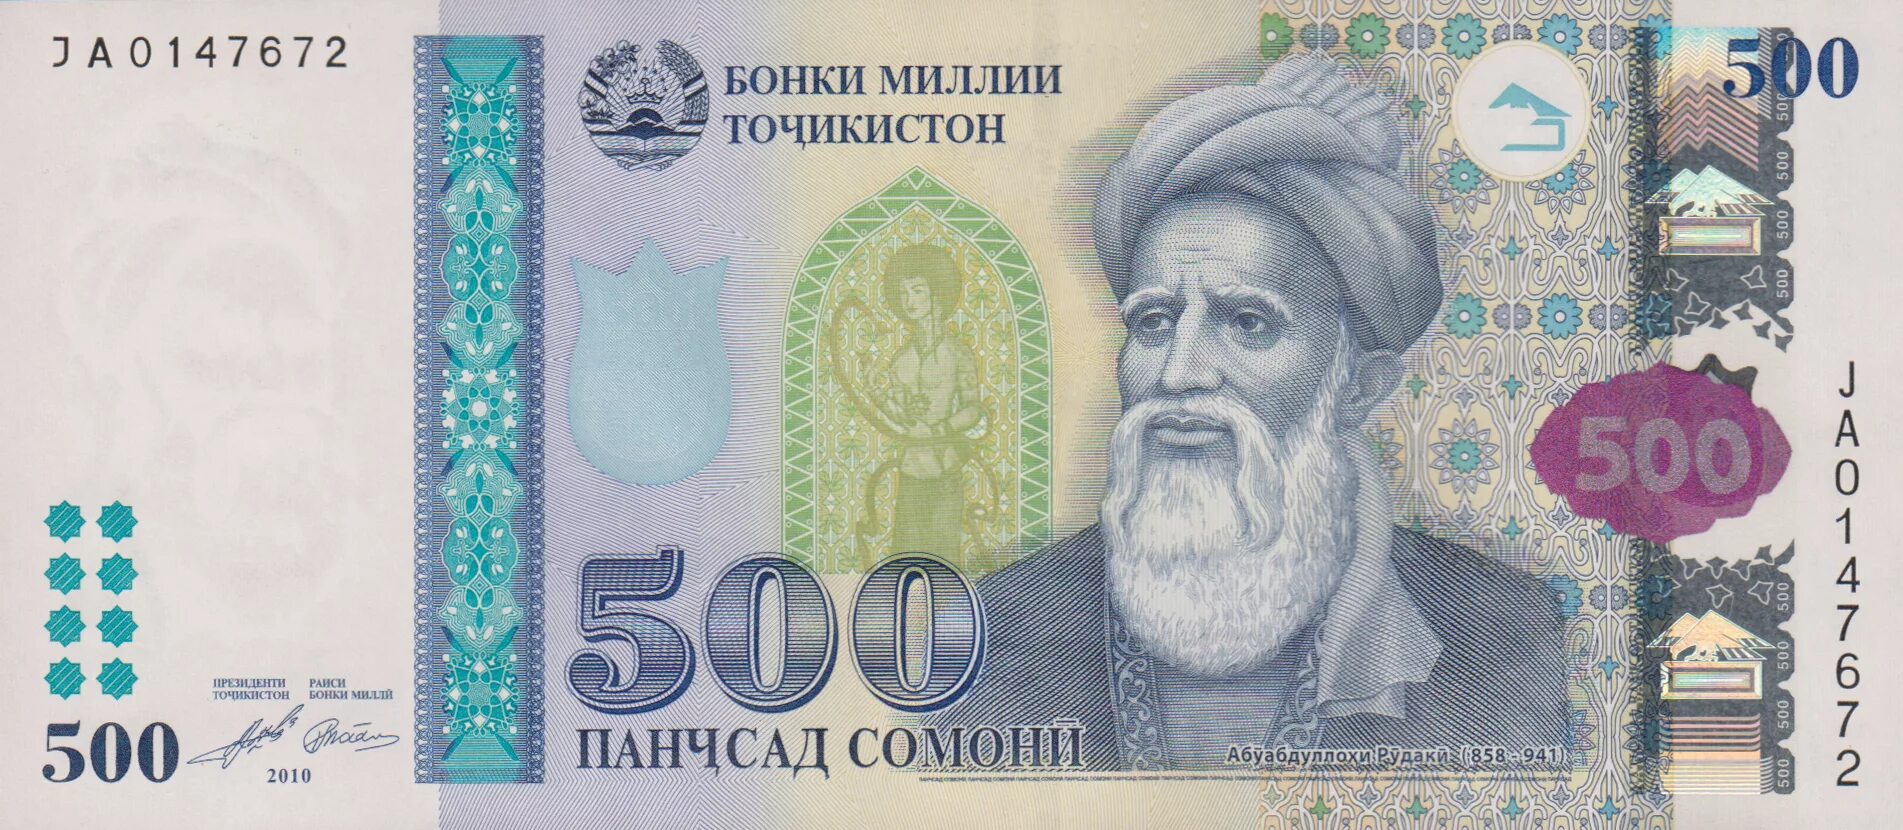 500 таджикски. Купюра Таджикистана 500 Сомони. Деньги Таджикистана 500 Сомони. Купюры Сомони 500 Сомони. Пули точики 500 сомона.